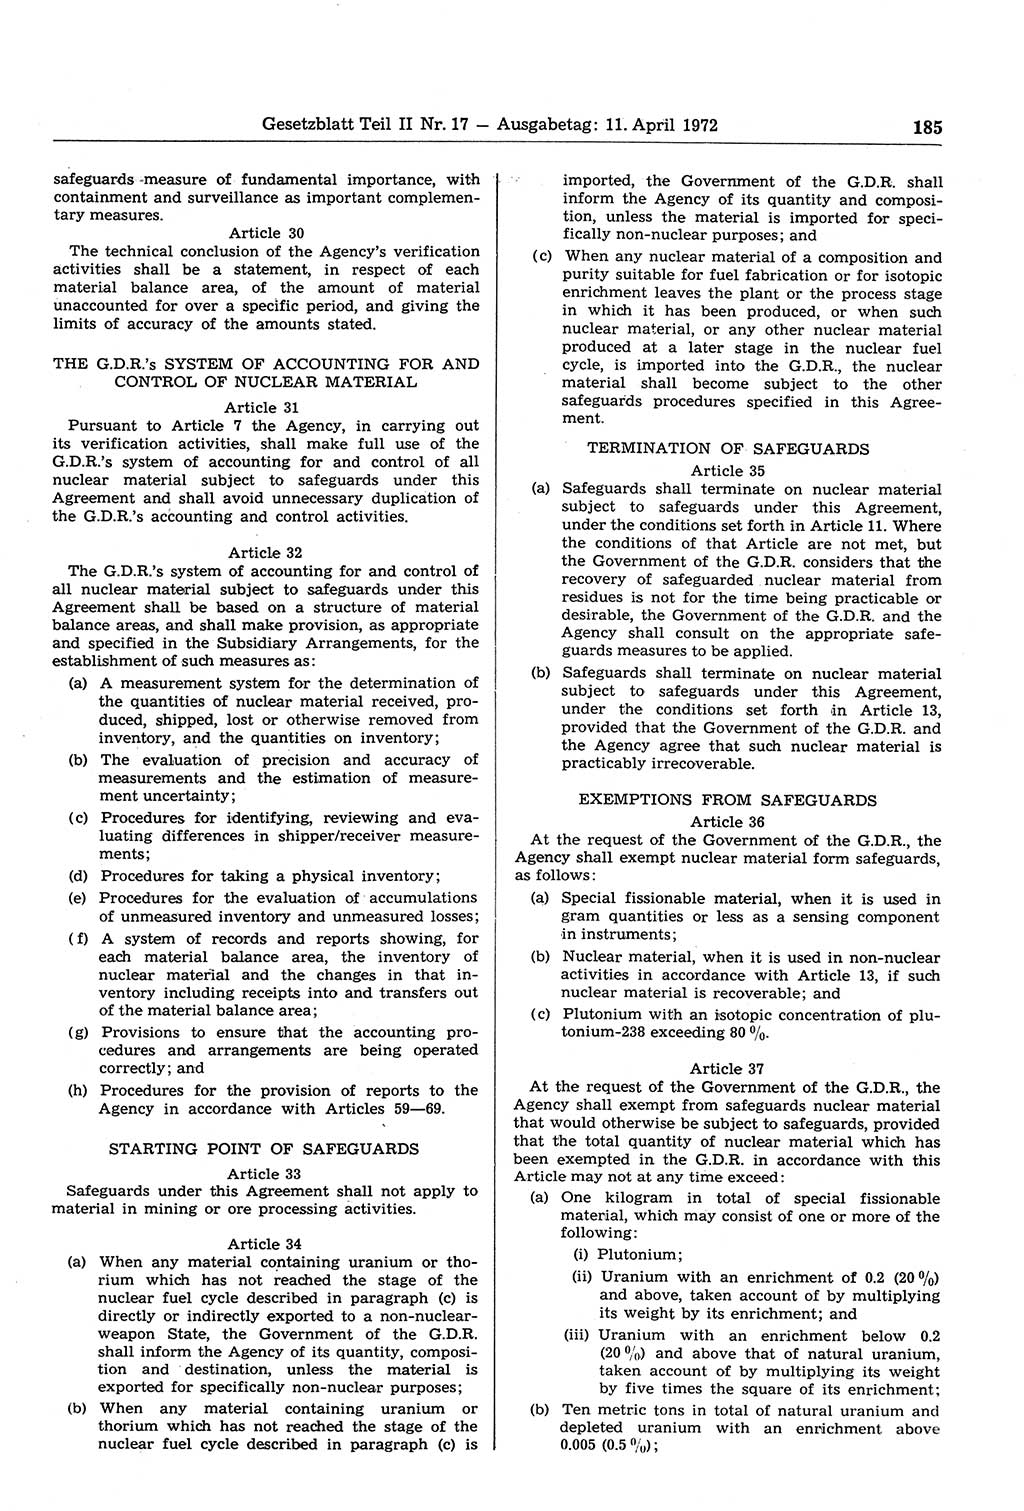 Gesetzblatt (GBl.) der Deutschen Demokratischen Republik (DDR) Teil ⅠⅠ 1972, Seite 185 (GBl. DDR ⅠⅠ 1972, S. 185)